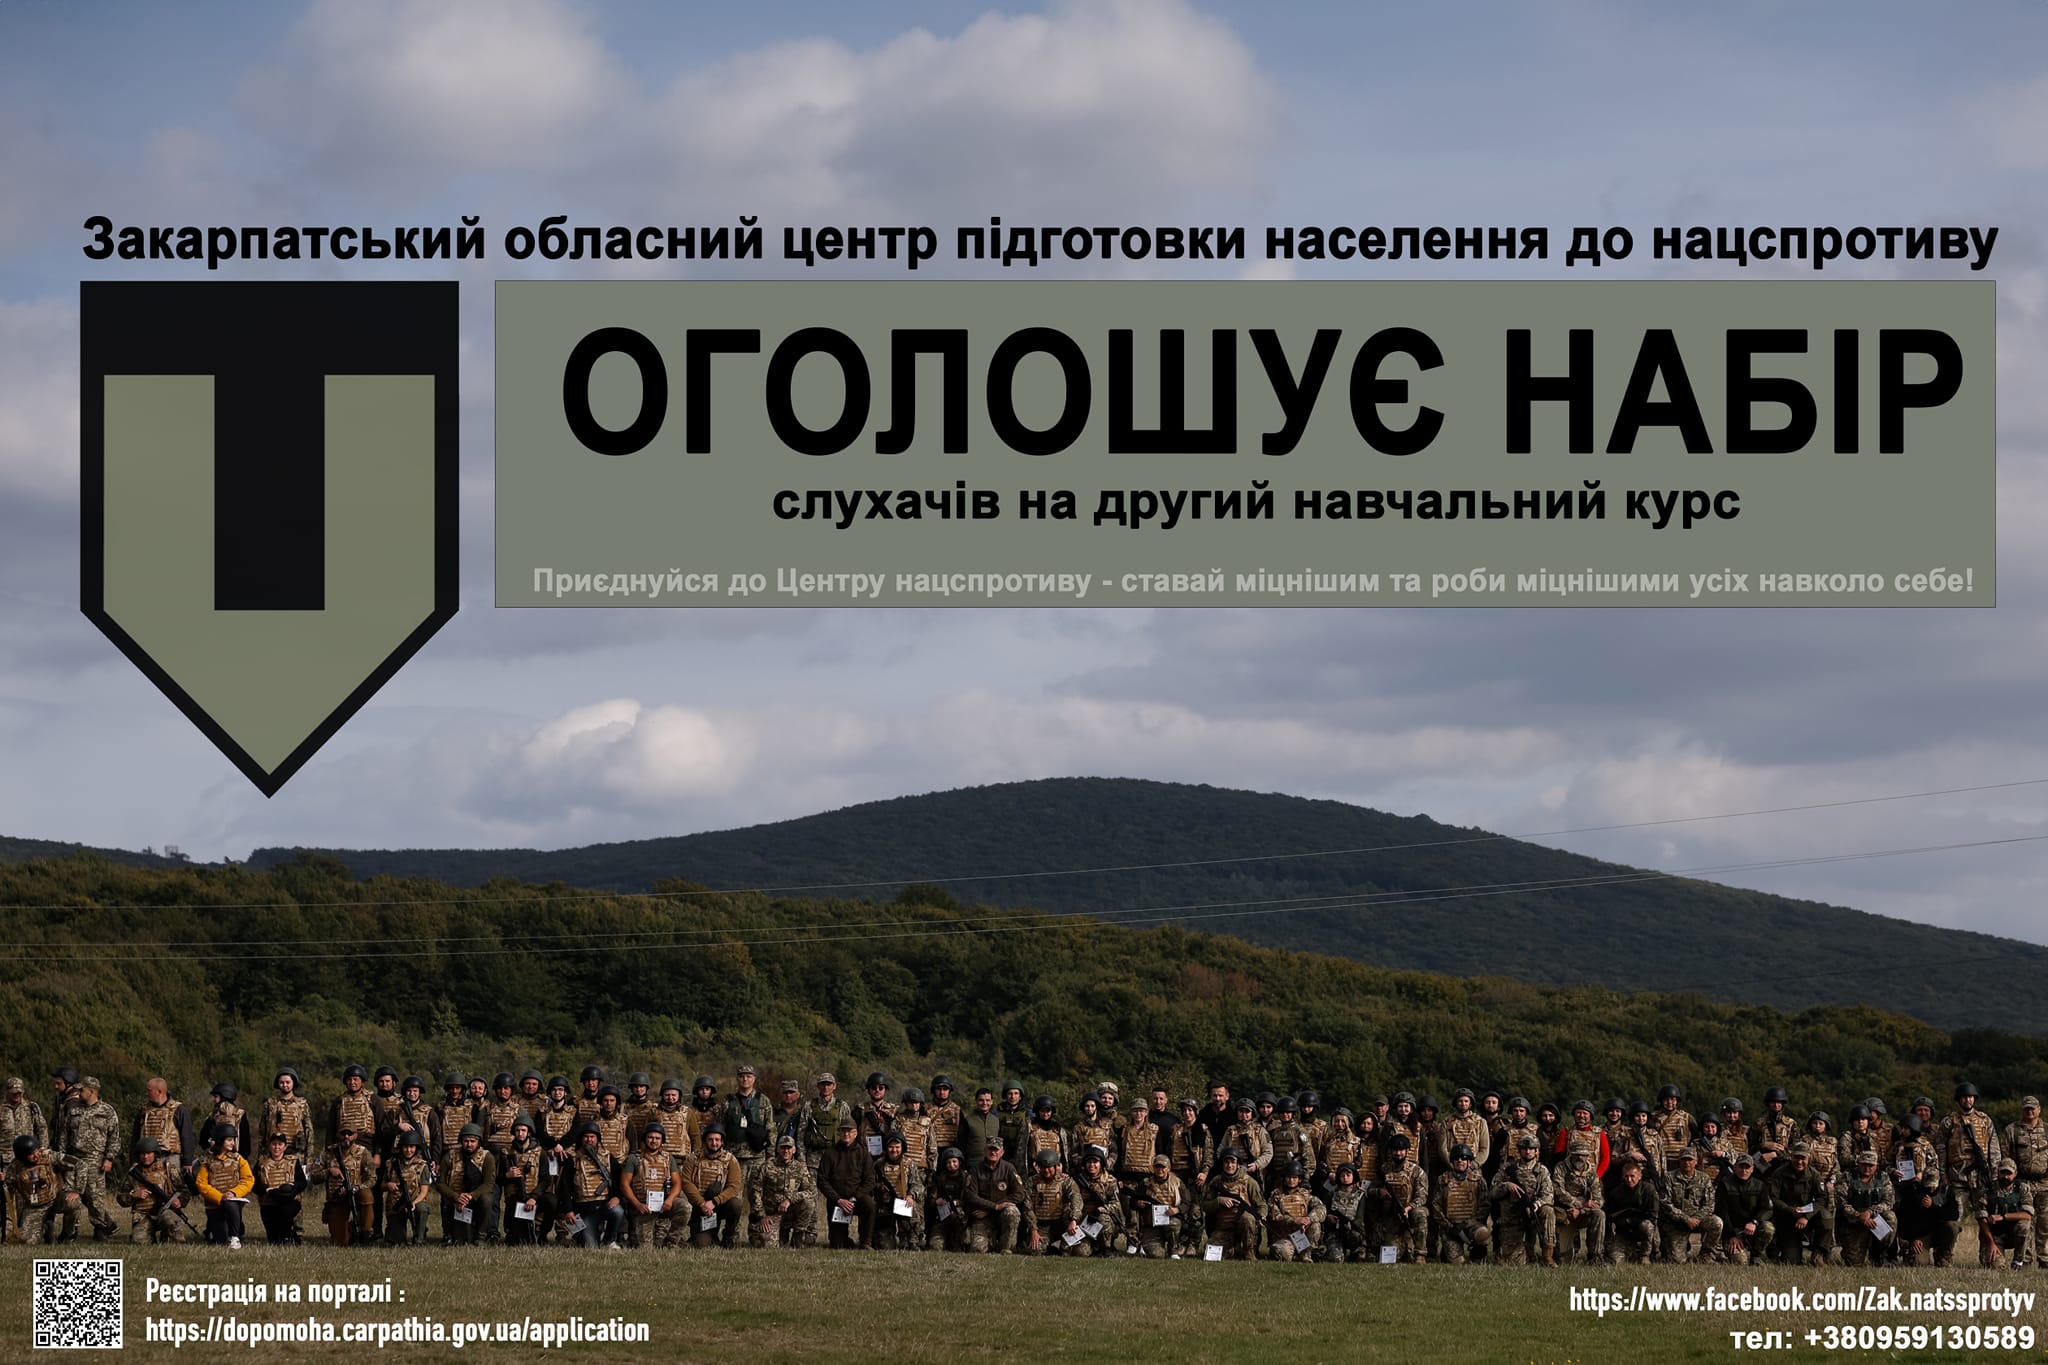 Закарпатський центр підготовки населення до національного спротиву оголосив другий набір учасників на навчання